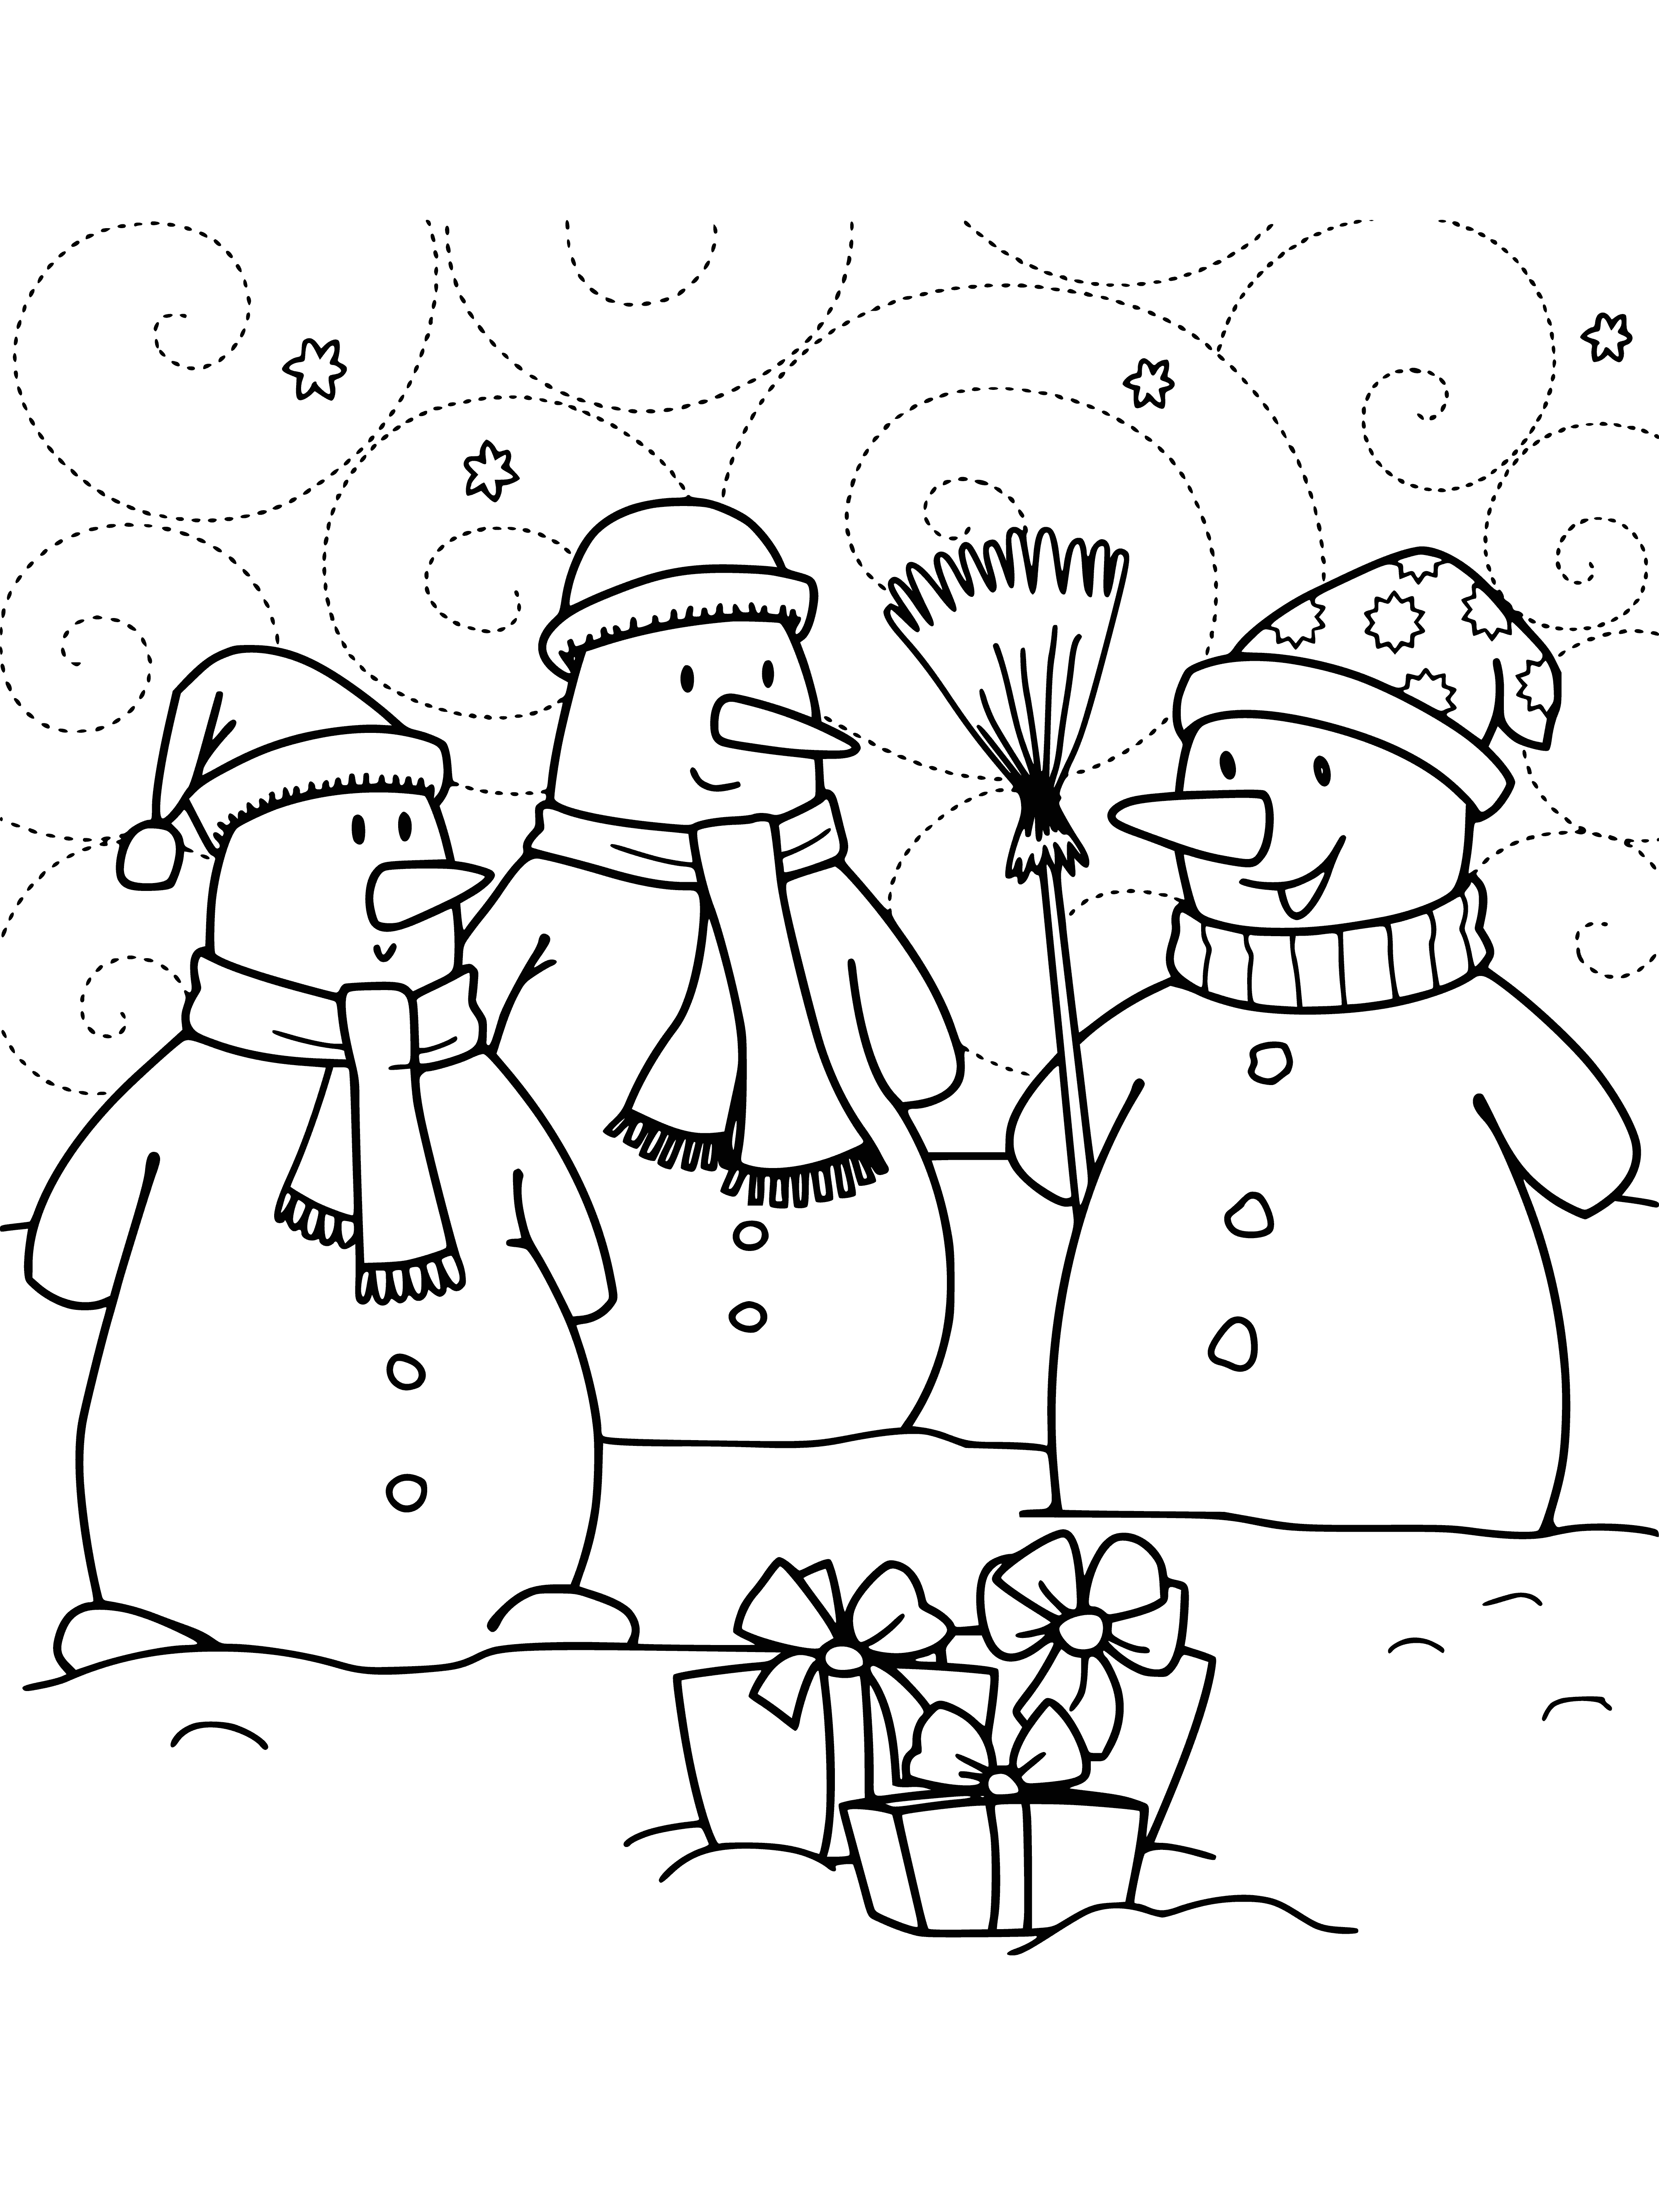 Bonhommes de neige coloriage